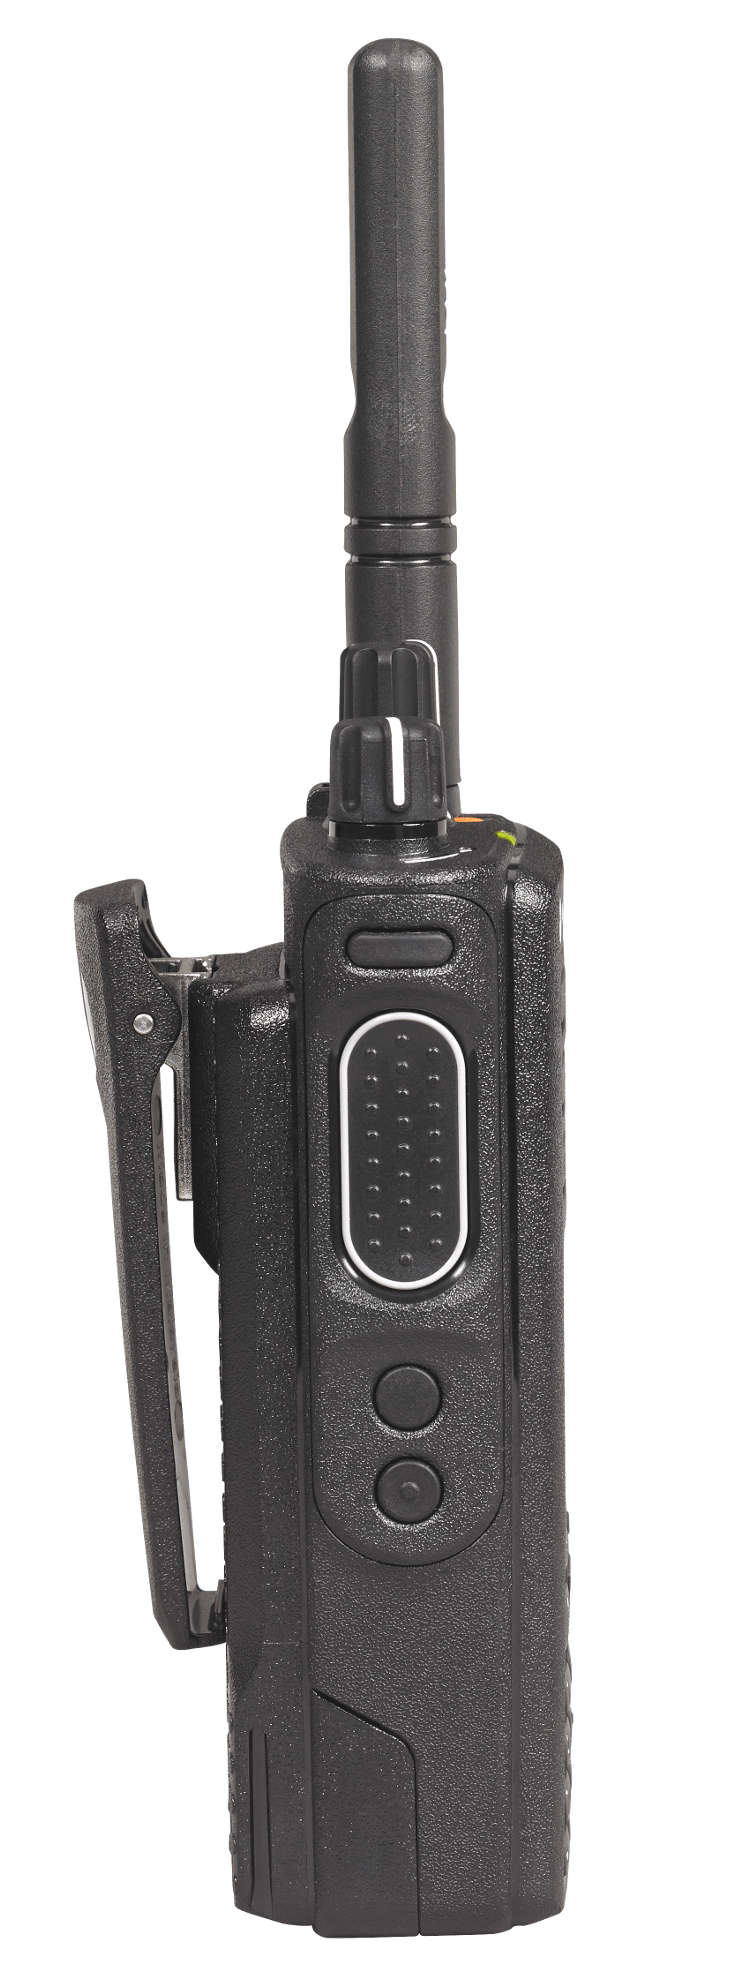 Портативна DMR радіостанція Motorola DP4800E VHF